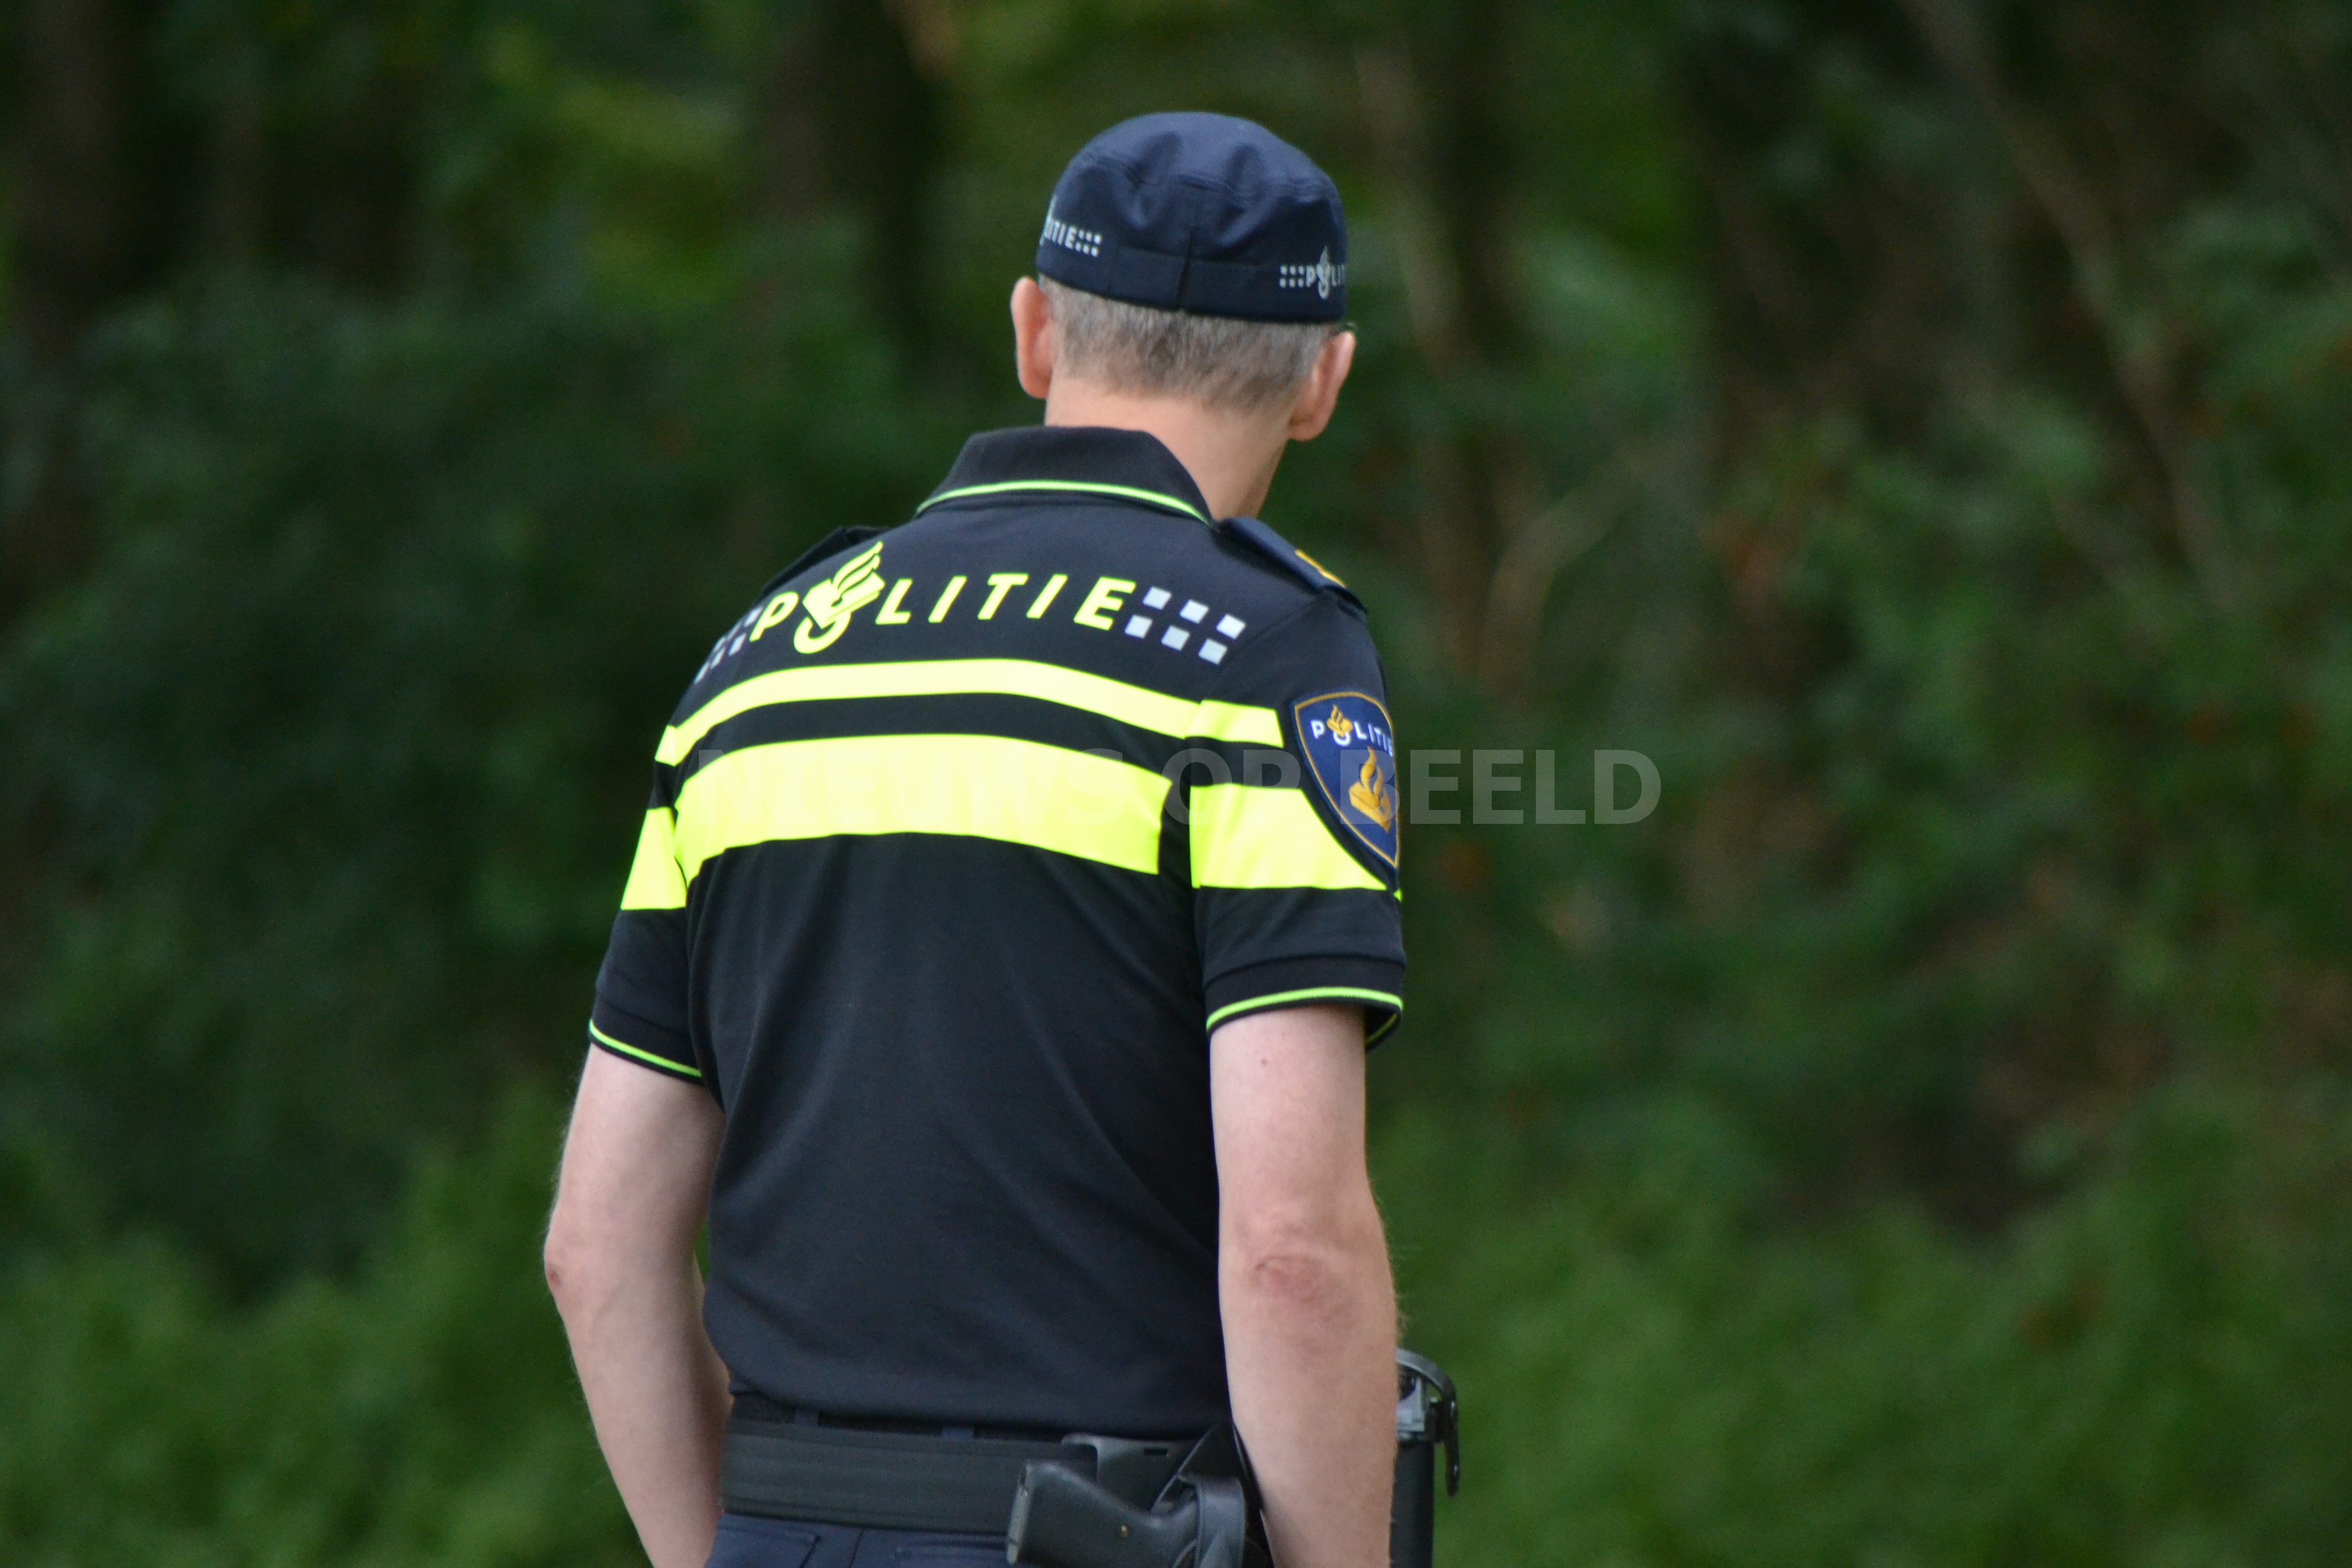 licht voor eeuwig Bestaan Niet in politie-uniform naar carnaval - Nieuws op Beeld - 112 Nieuws vanuit  Rotterdam E.O